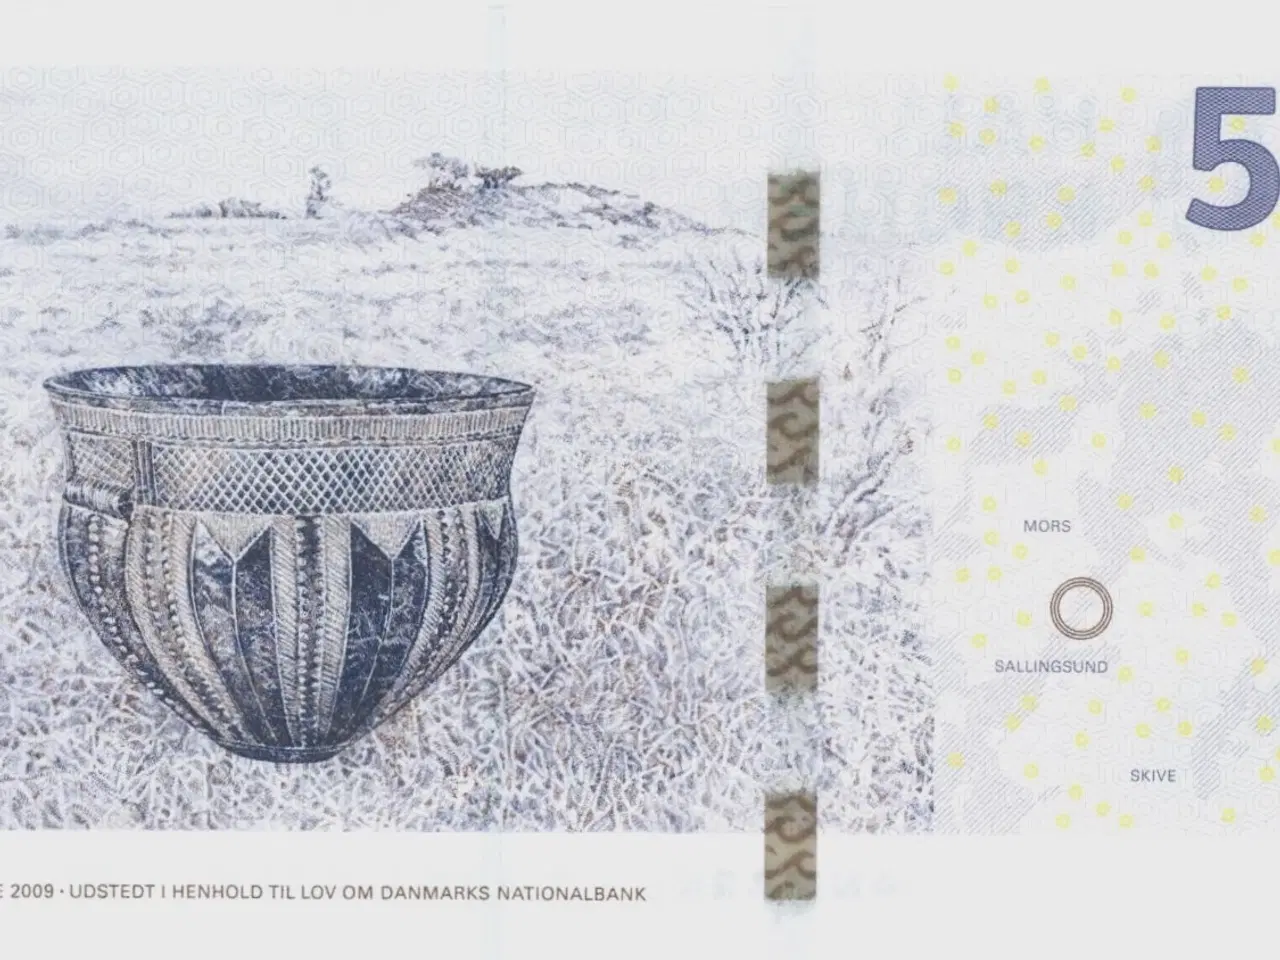 Billede 2 - DK. 50 kr. seddel fra 2009